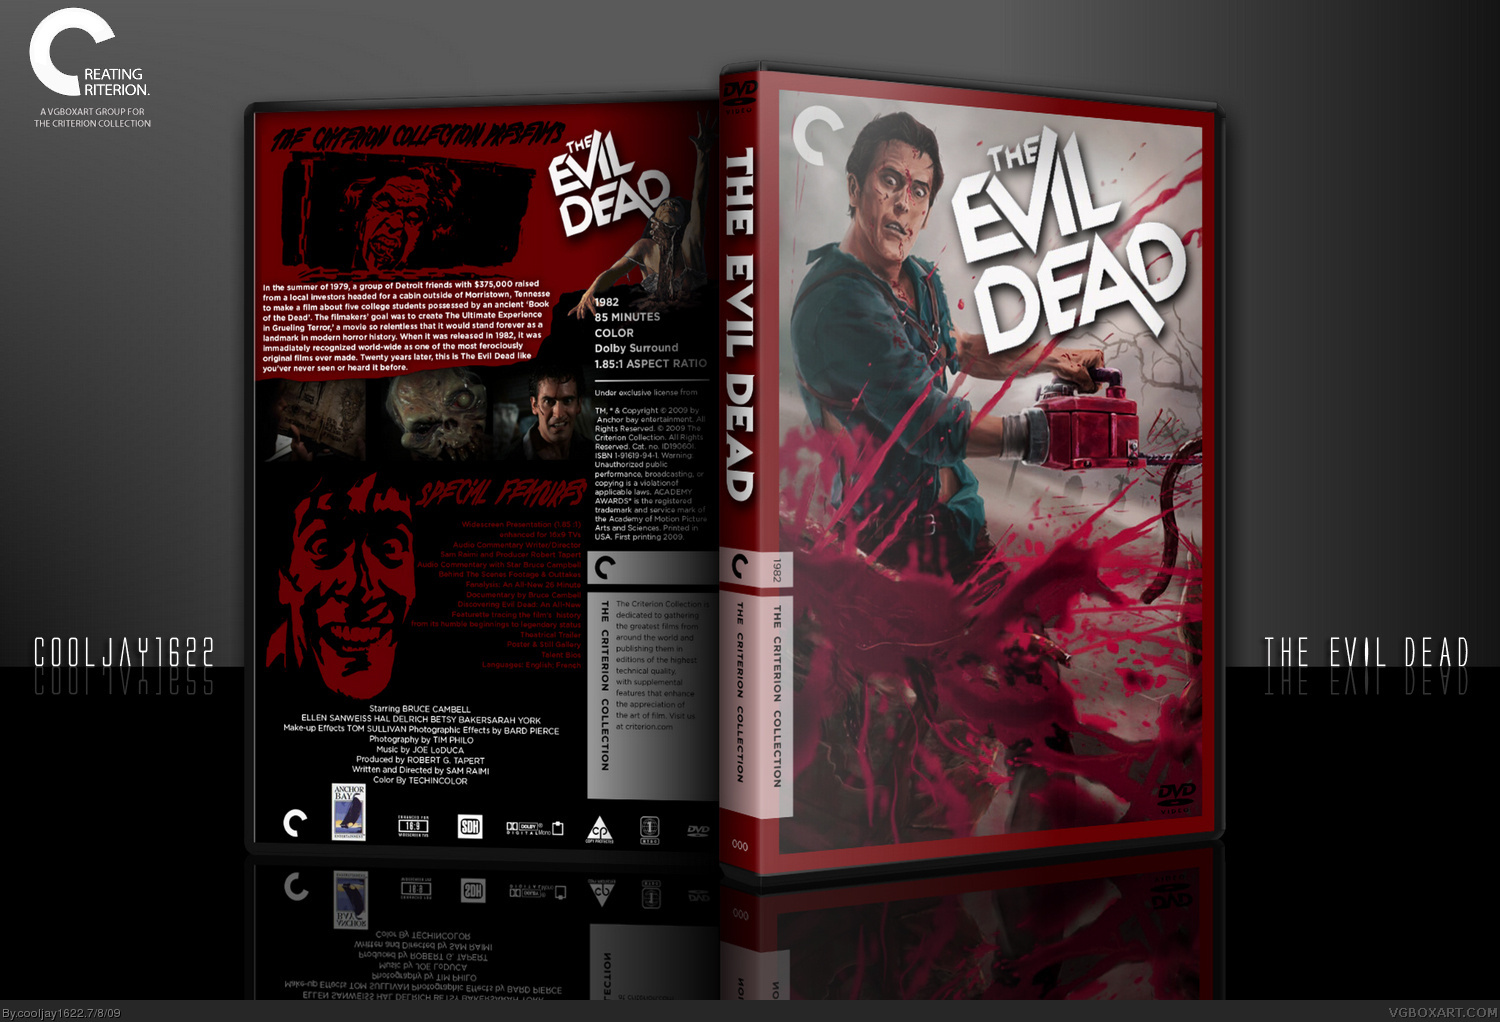 The Evil Dead box cover